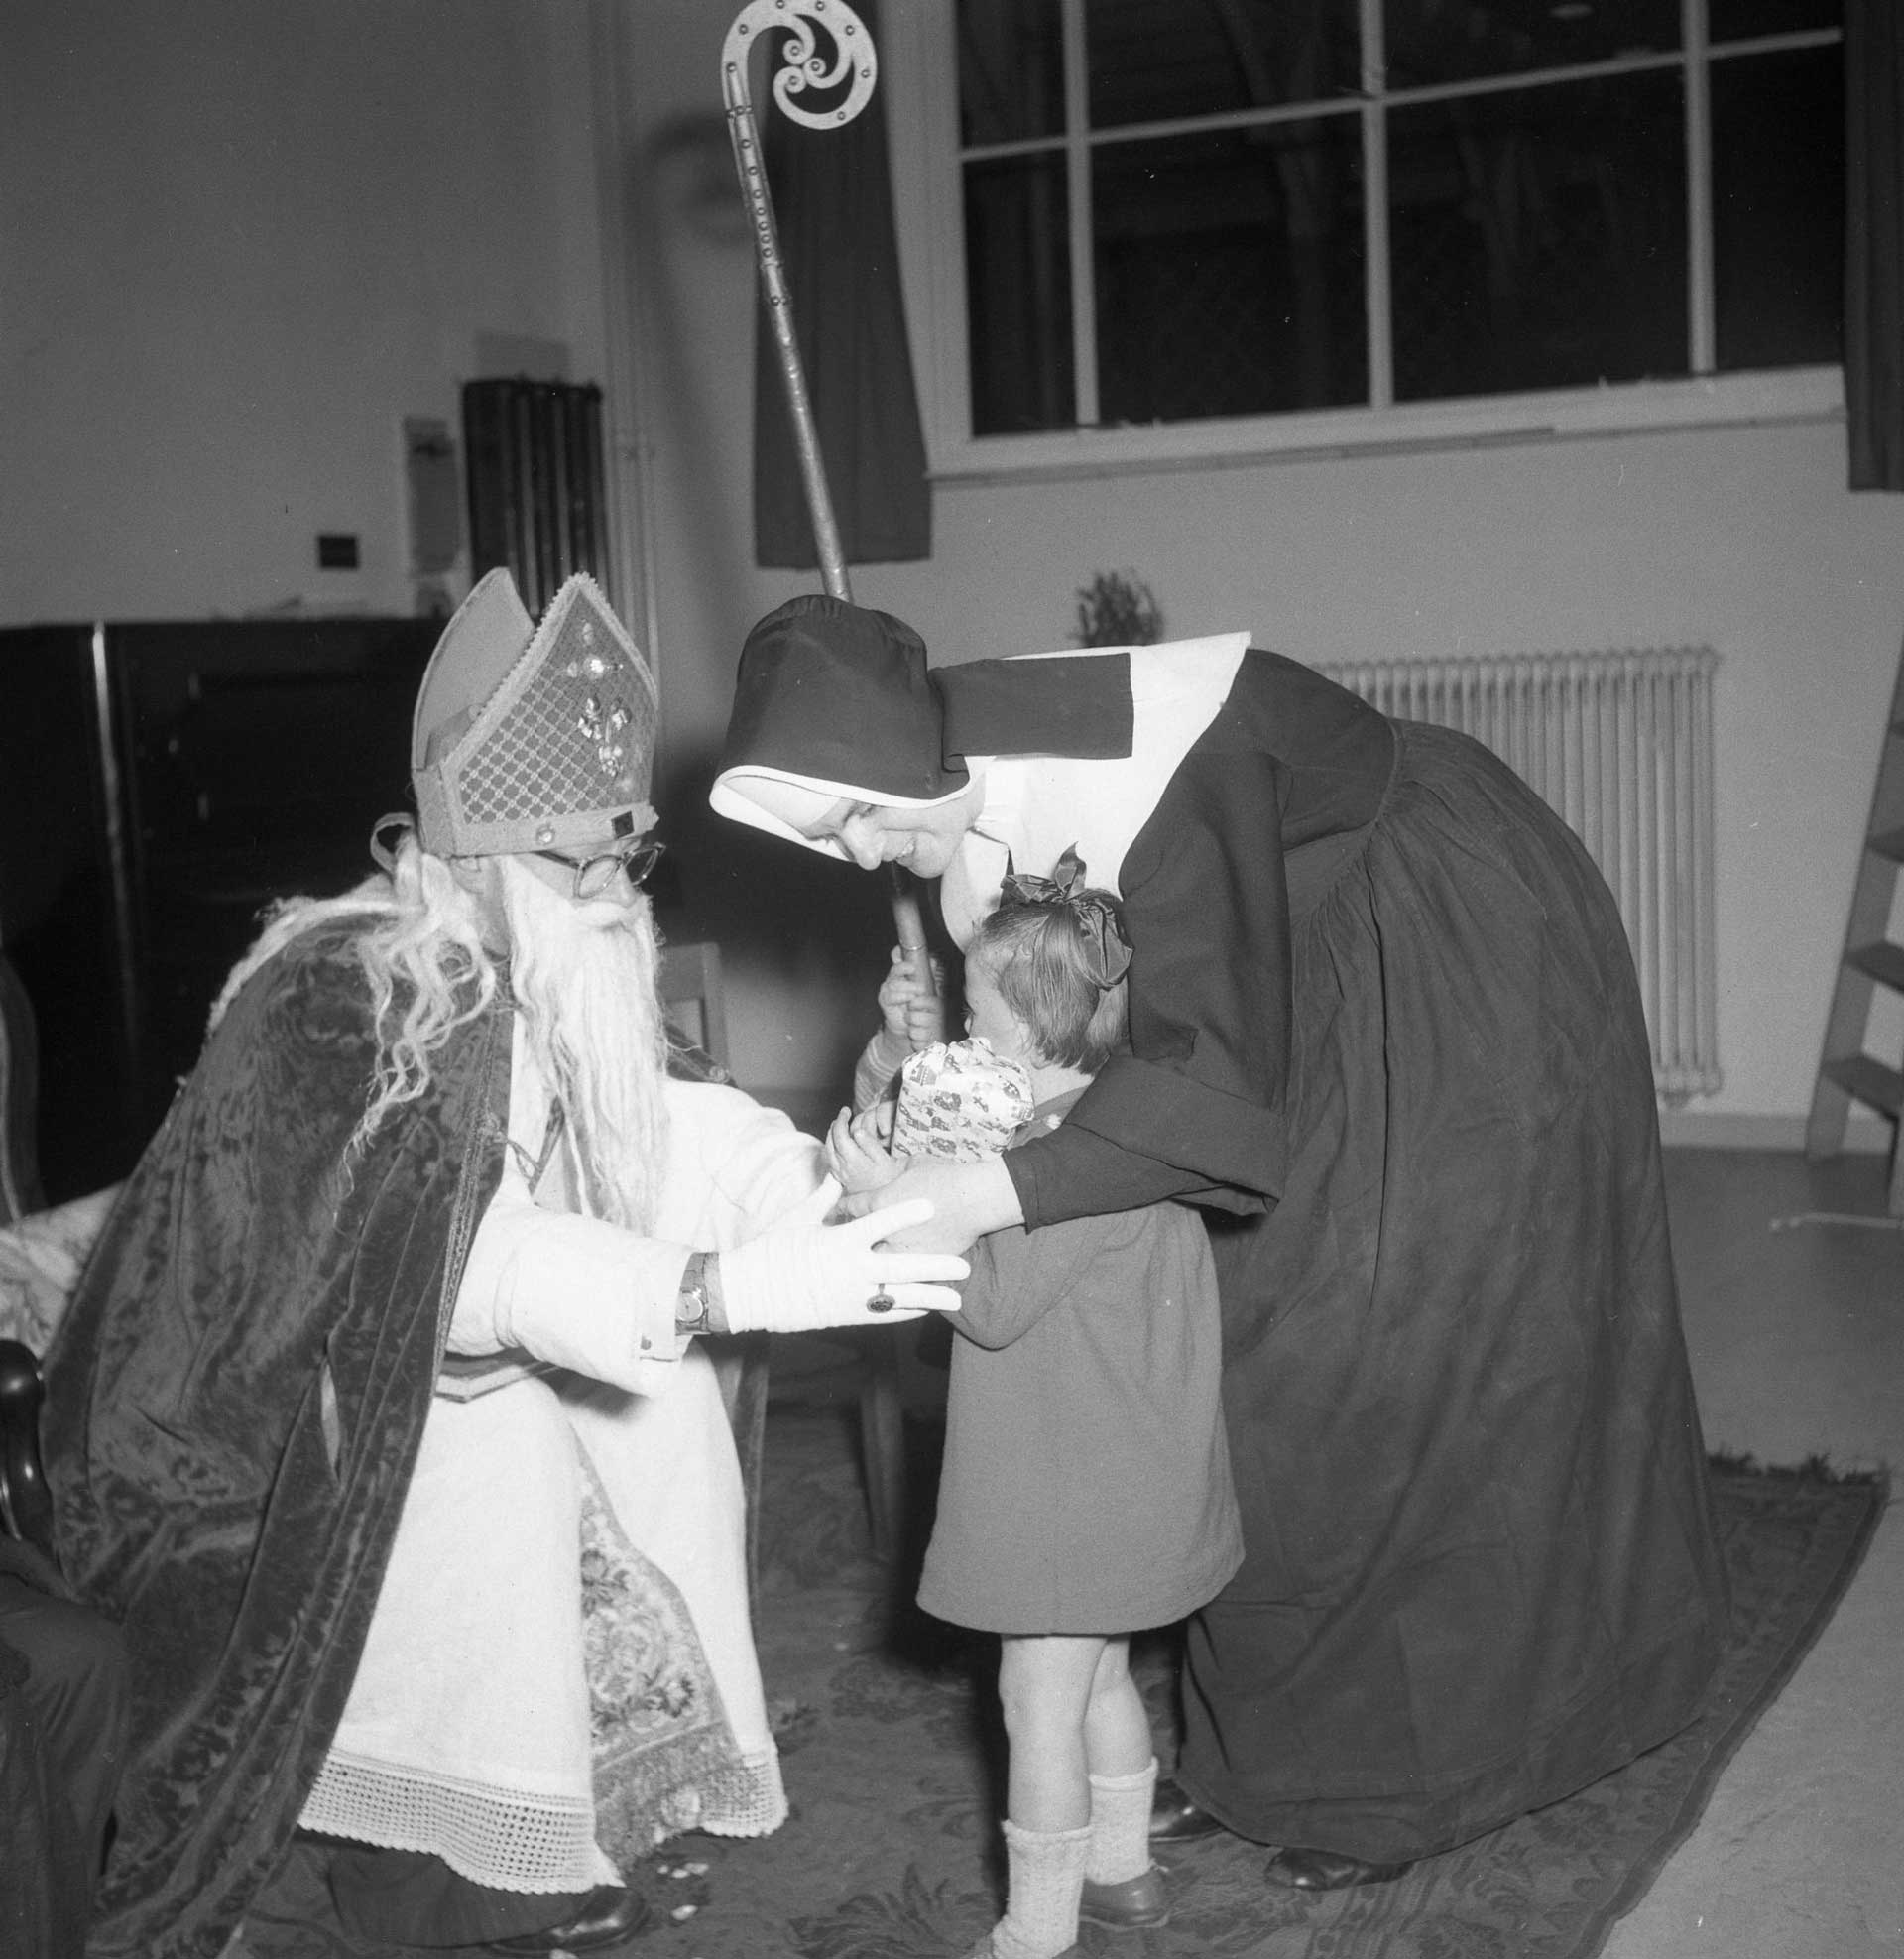 Bezoek van Sint Nicolaas aan het kindertehuis (foto: Fotopersbureau Het Zuiden. Bron: BHIC fotonummer 1672-004120)